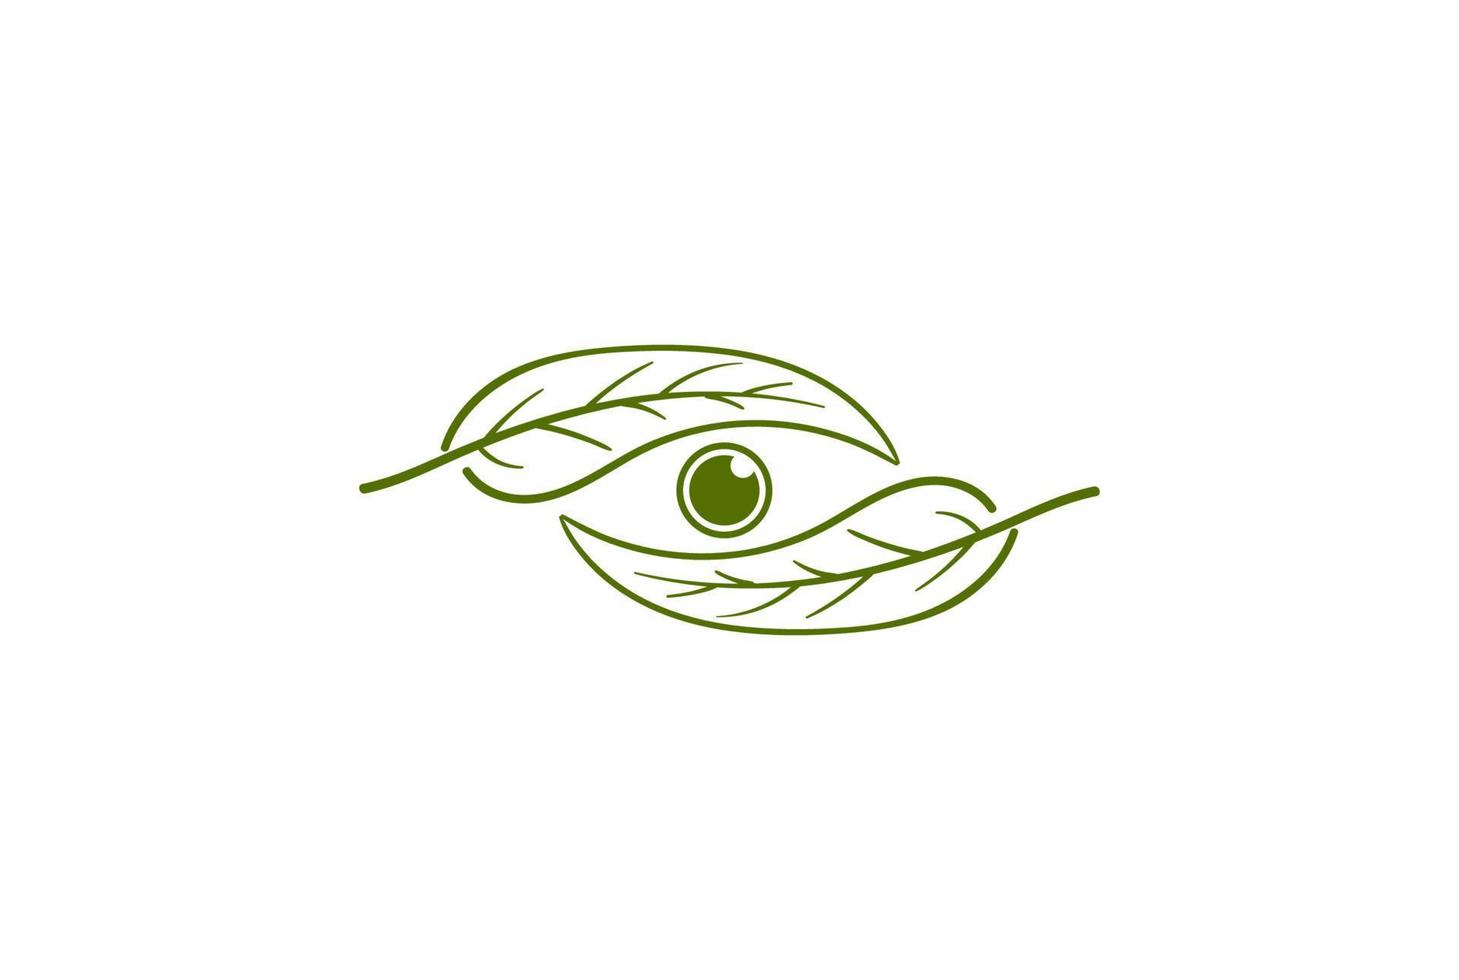 foglia verde dell'albero della pianta con il vettore di progettazione del logo di visione ottica della fotocamera dell'occhio